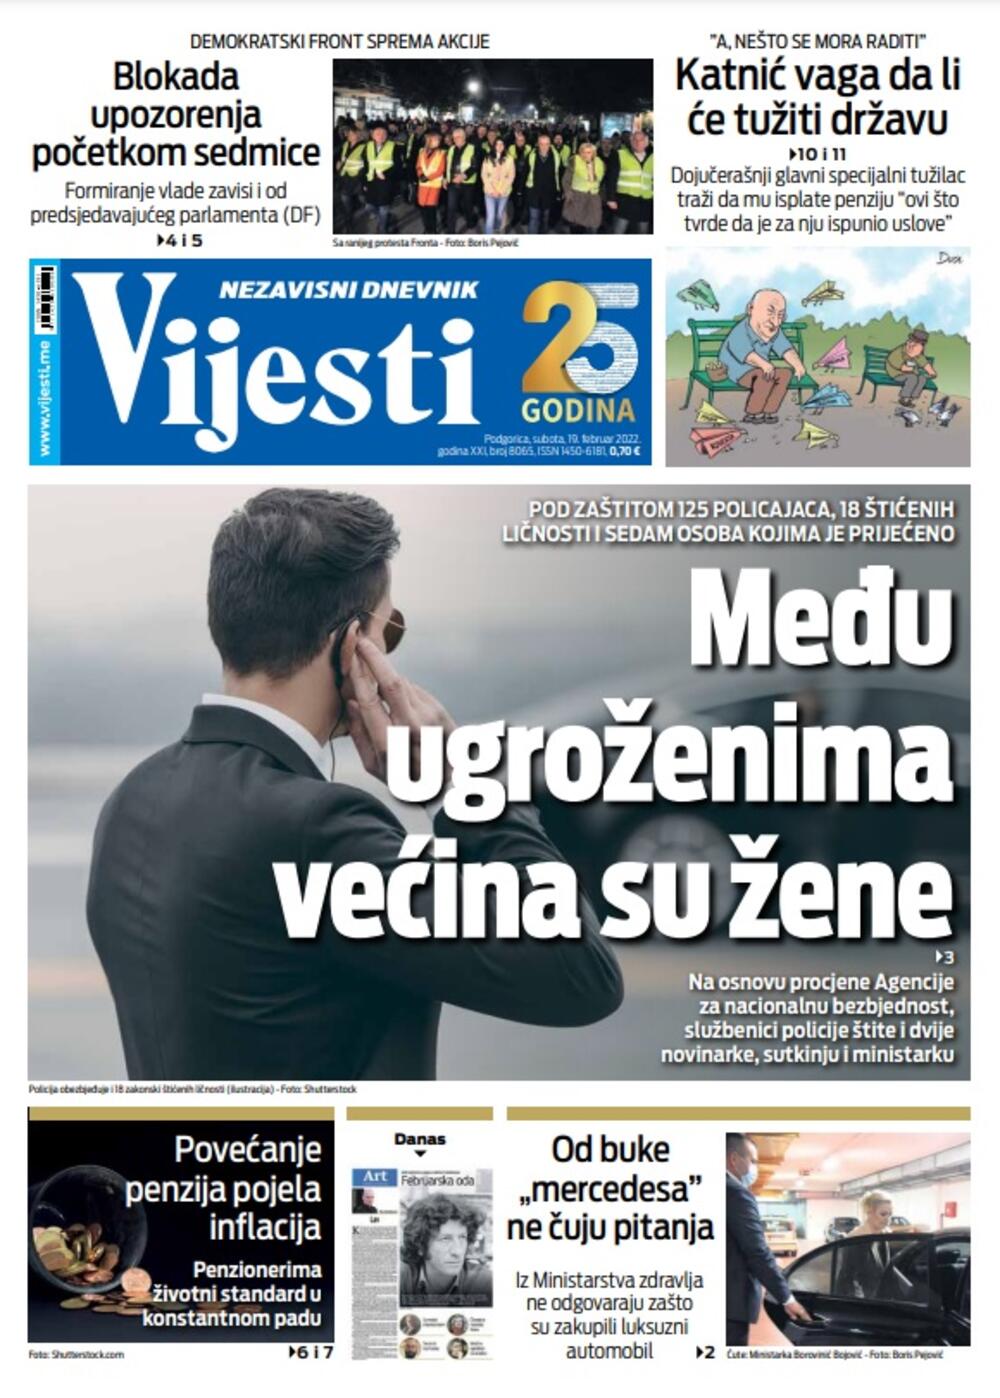 Naslovna strana "Vijesti" za 19. februar 2022., Foto: Vijesti